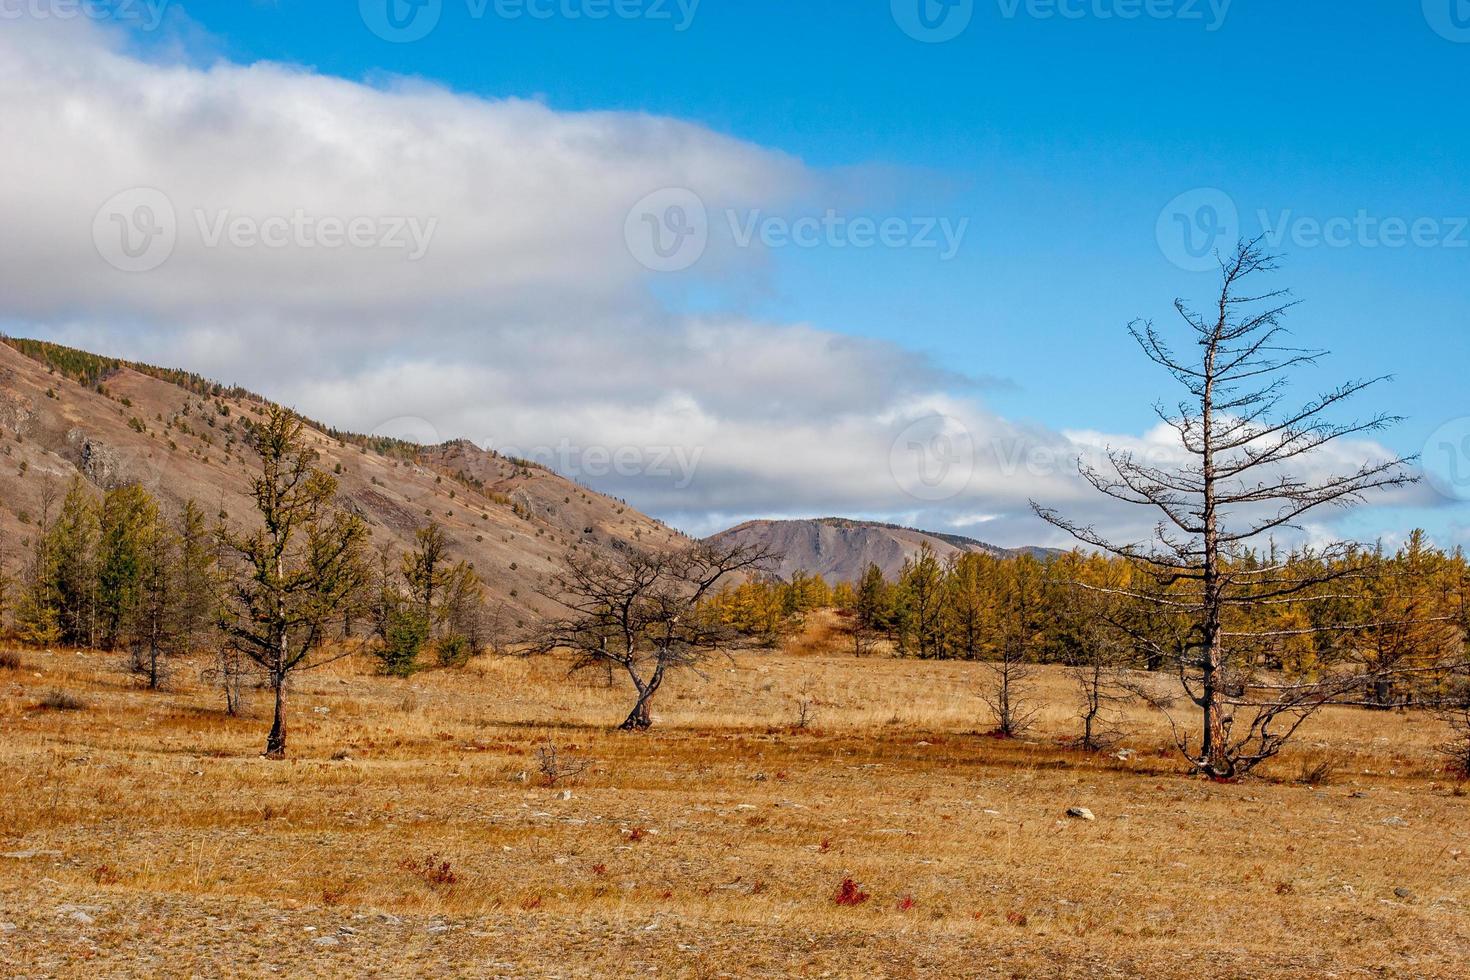 herfst steppe landschap met heuvels en droog bomen in de voorgrond. wolken in de lucht. oud geel en bruin gras Aan de grond. foto